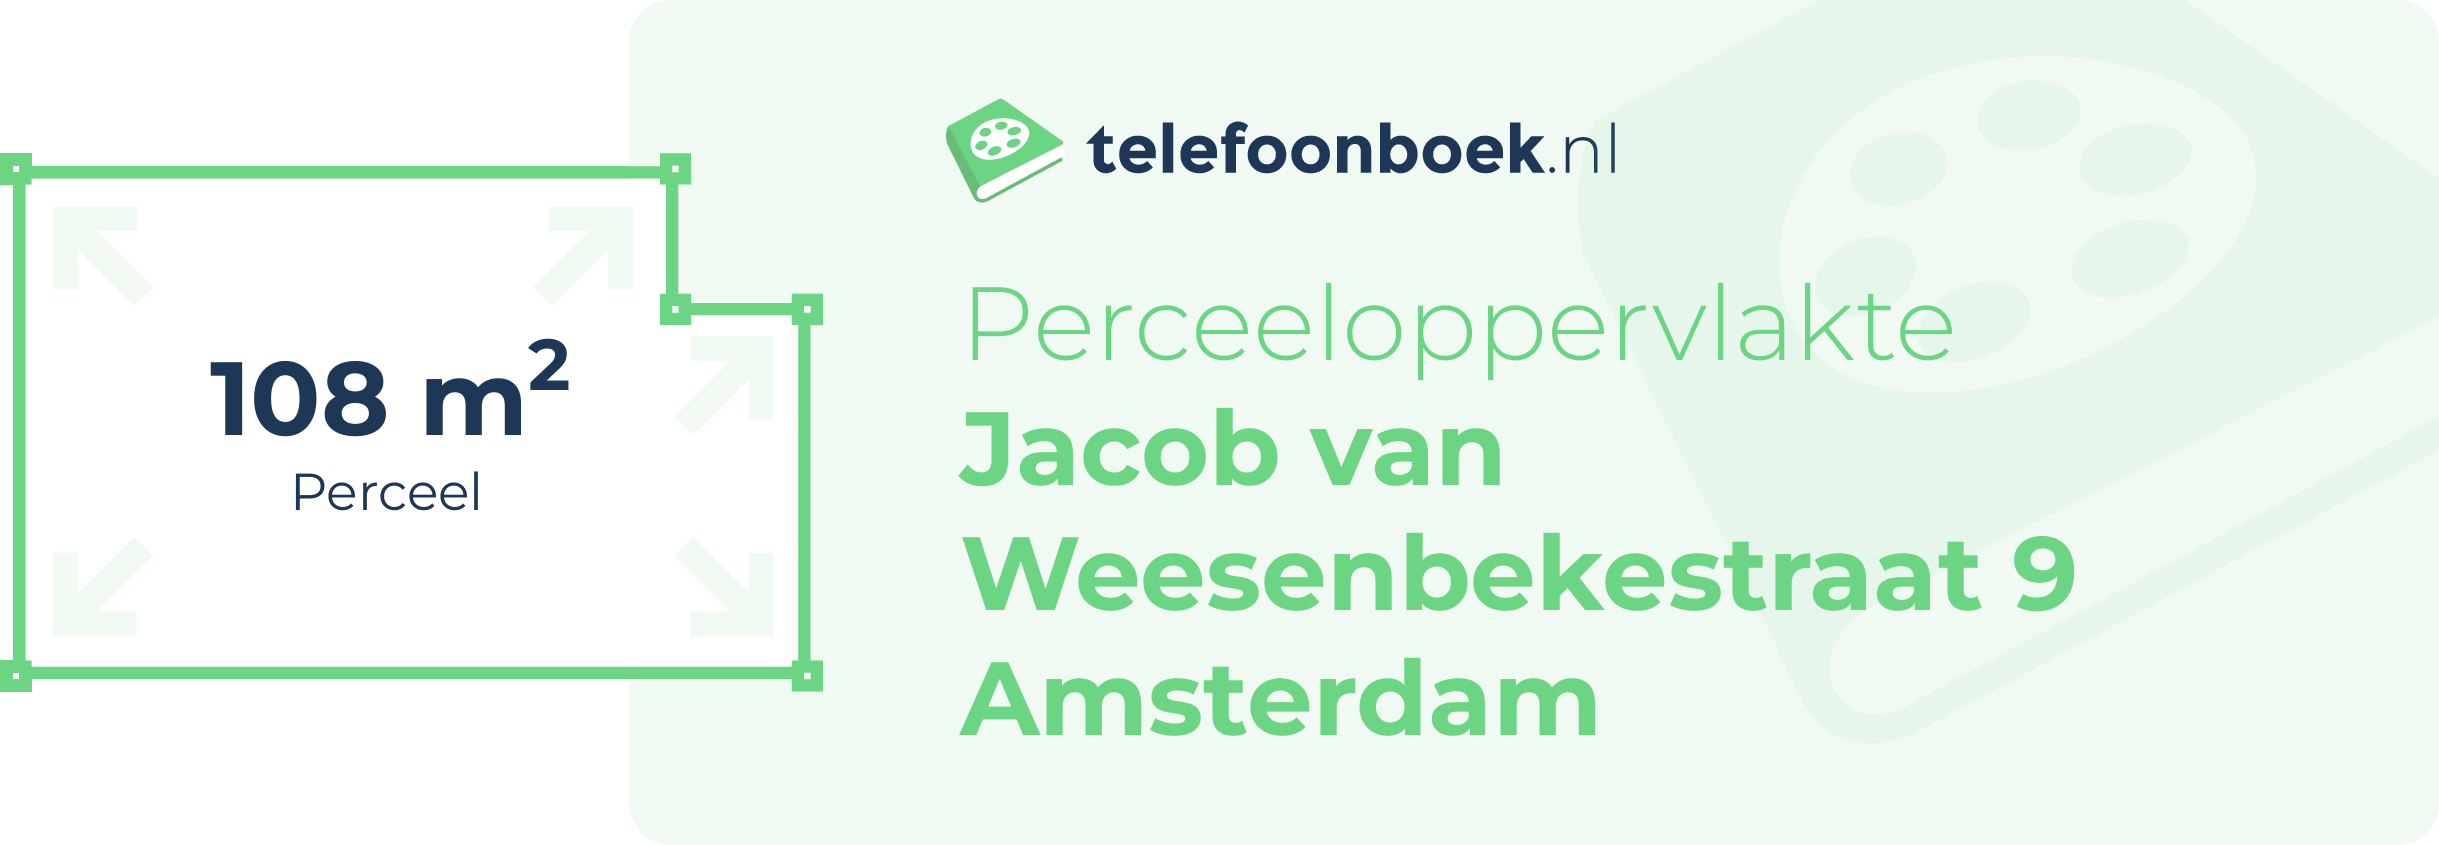 Perceeloppervlakte Jacob Van Weesenbekestraat 9 Amsterdam